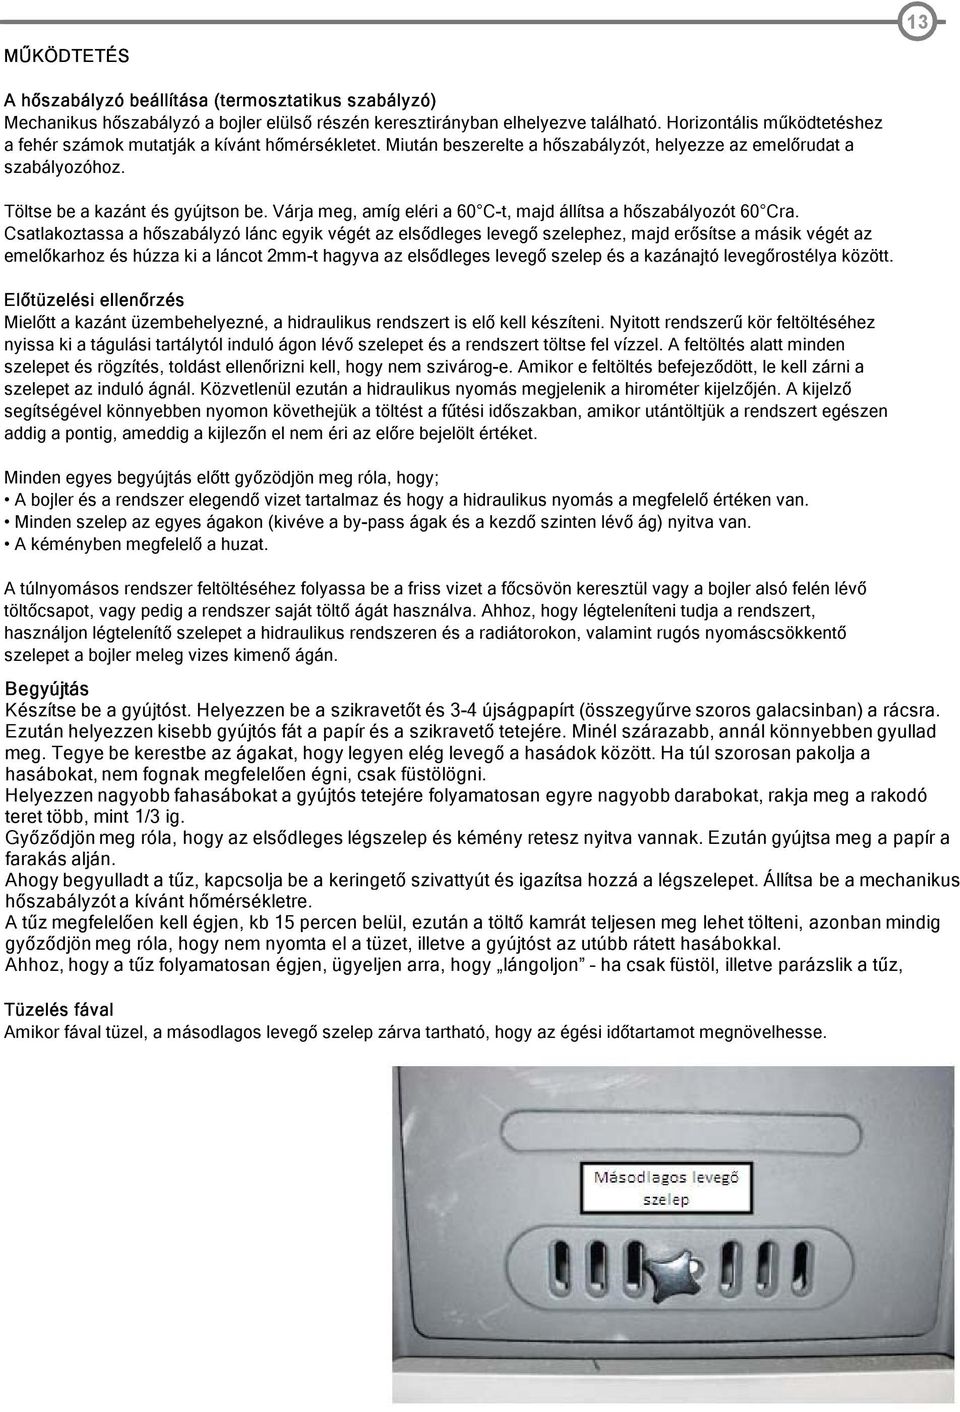 Használati, szerelési és beüzemelési útmutató a. Solitherm S. típusú öntöttvas  kazán ST 3,4,5,6,7 és ST8 as modelljeihez - PDF Ingyenes letöltés